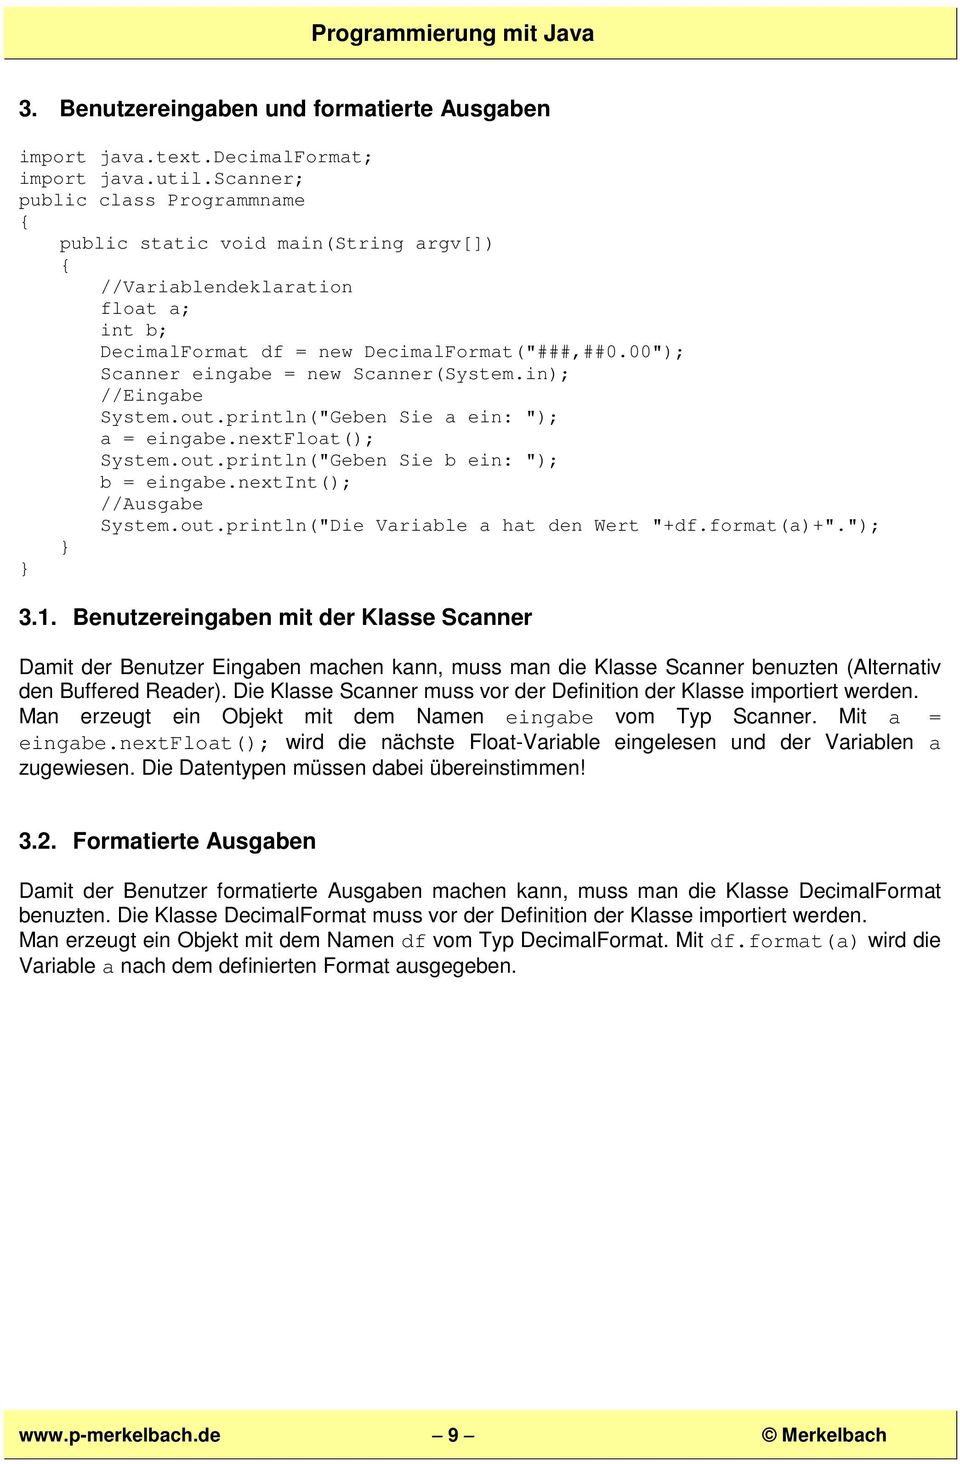 00"); Scanner eingabe = new Scanner(System.in); //Eingabe System.out.println("Geben Sie a ein: "); a = eingabe.nextfloat(); System.out.println("Geben Sie b ein: "); b = eingabe.